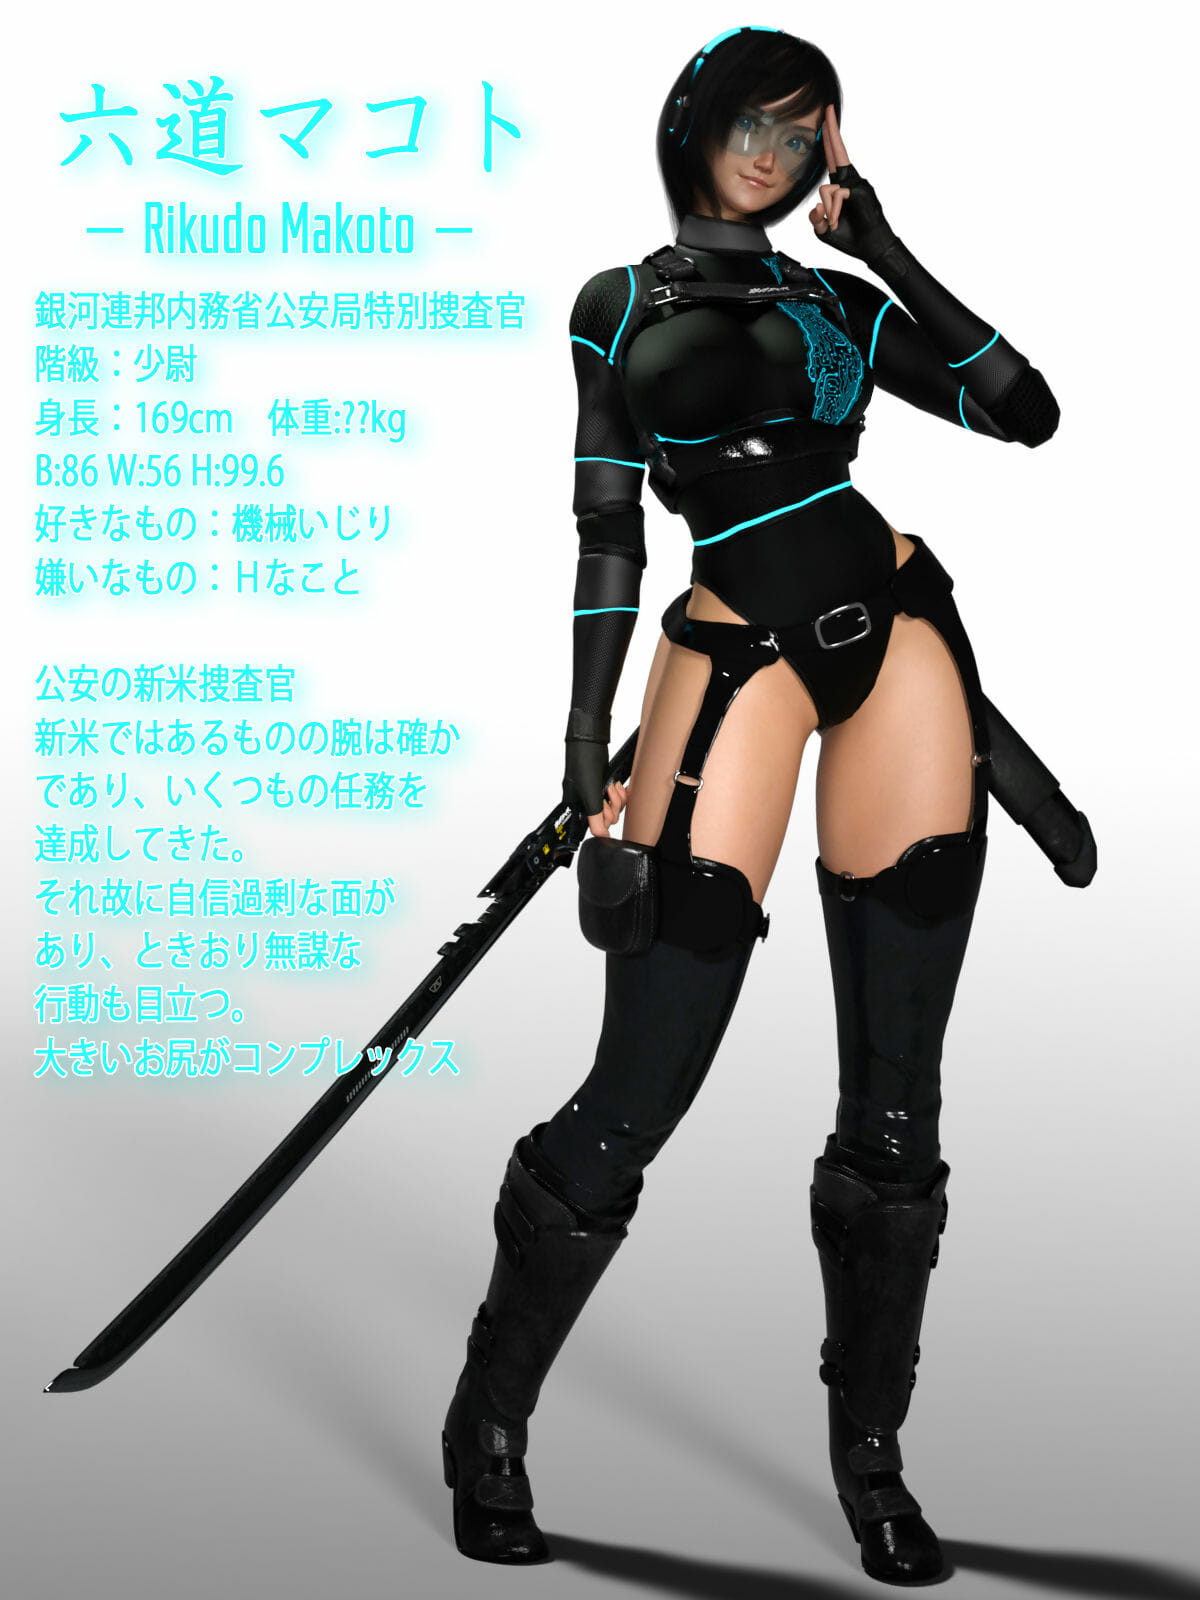 hà đặc biệt tìm kiếm Makoto lăng mạ CG bộ sưu tập page 1